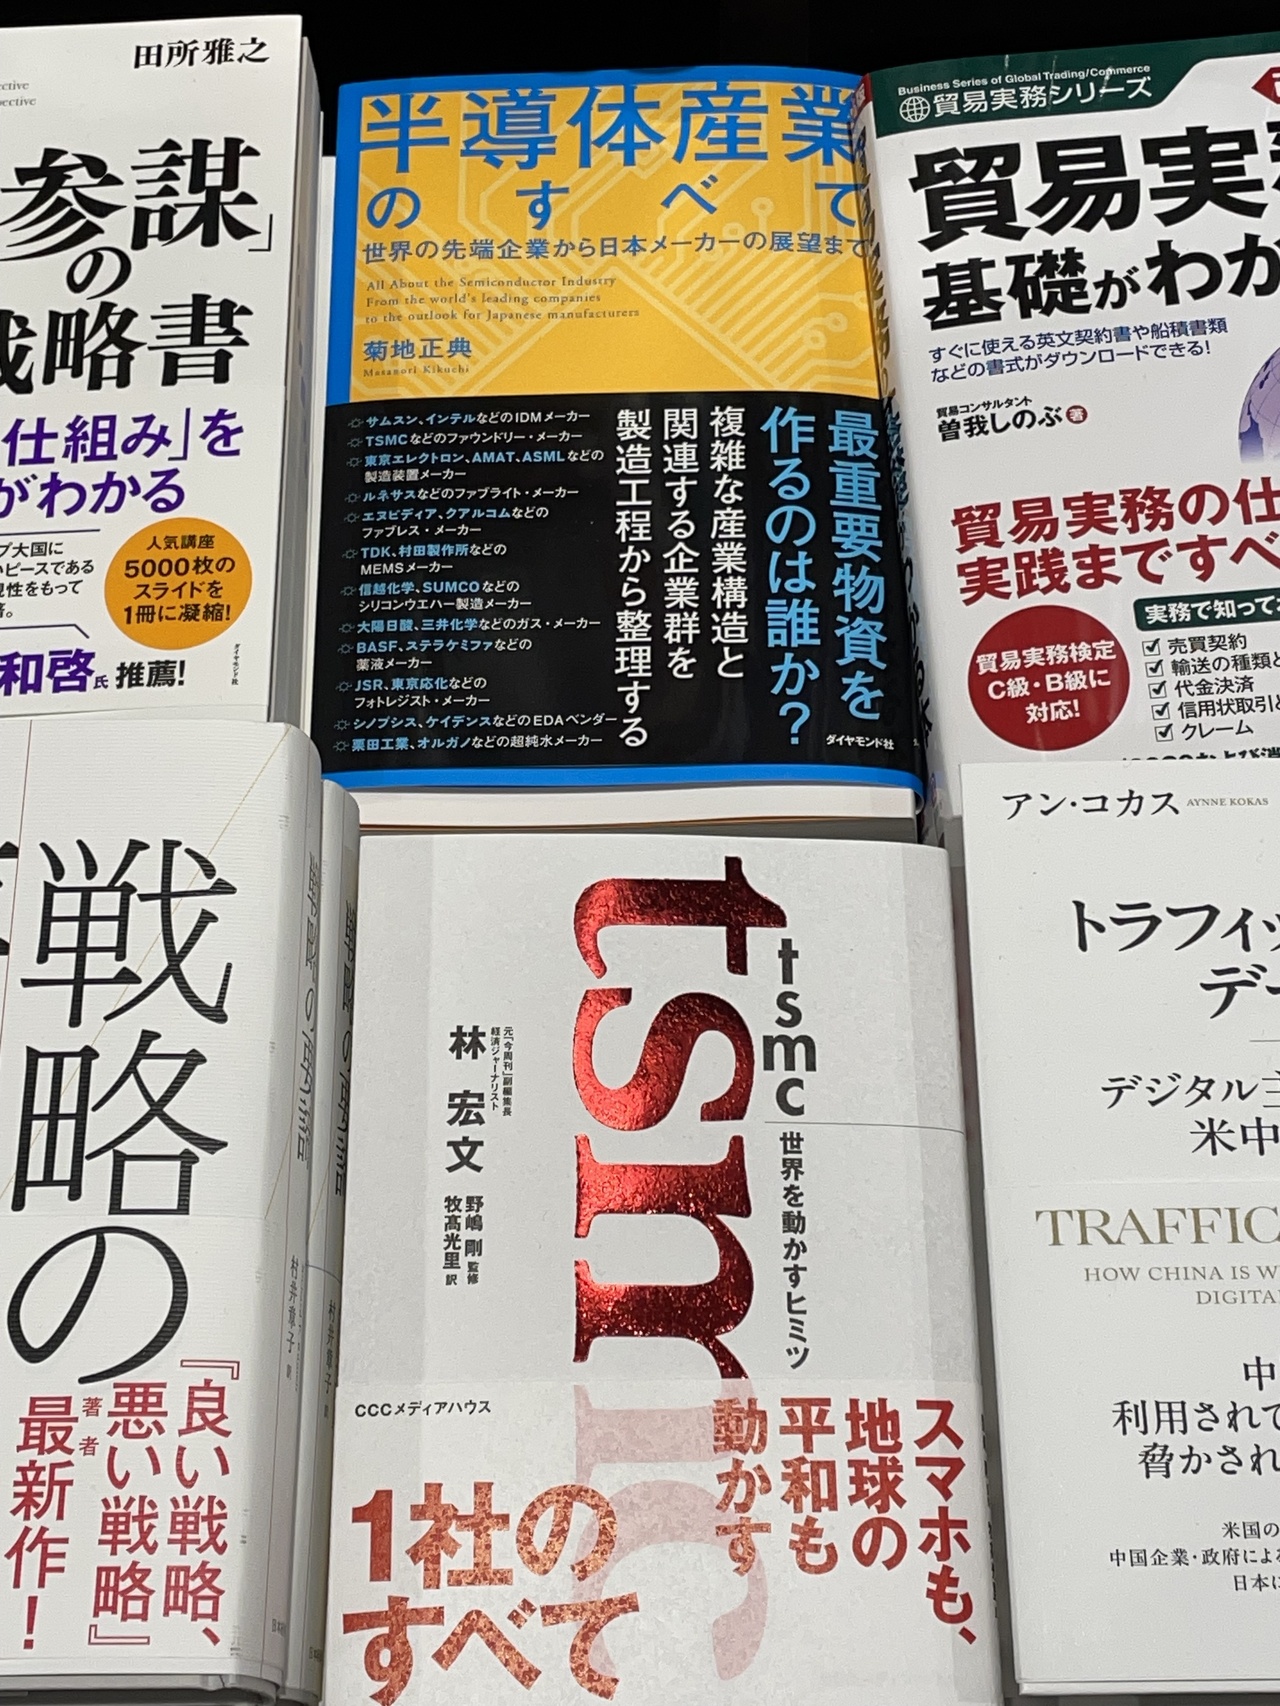 资深记者、今周刊顾问林宏文撰写的「晶片岛上的光芒」日文版「TSMC带动世界的秘密」在日本书店上架，甫一上架就被放在显眼位置，反响热烈。中央社